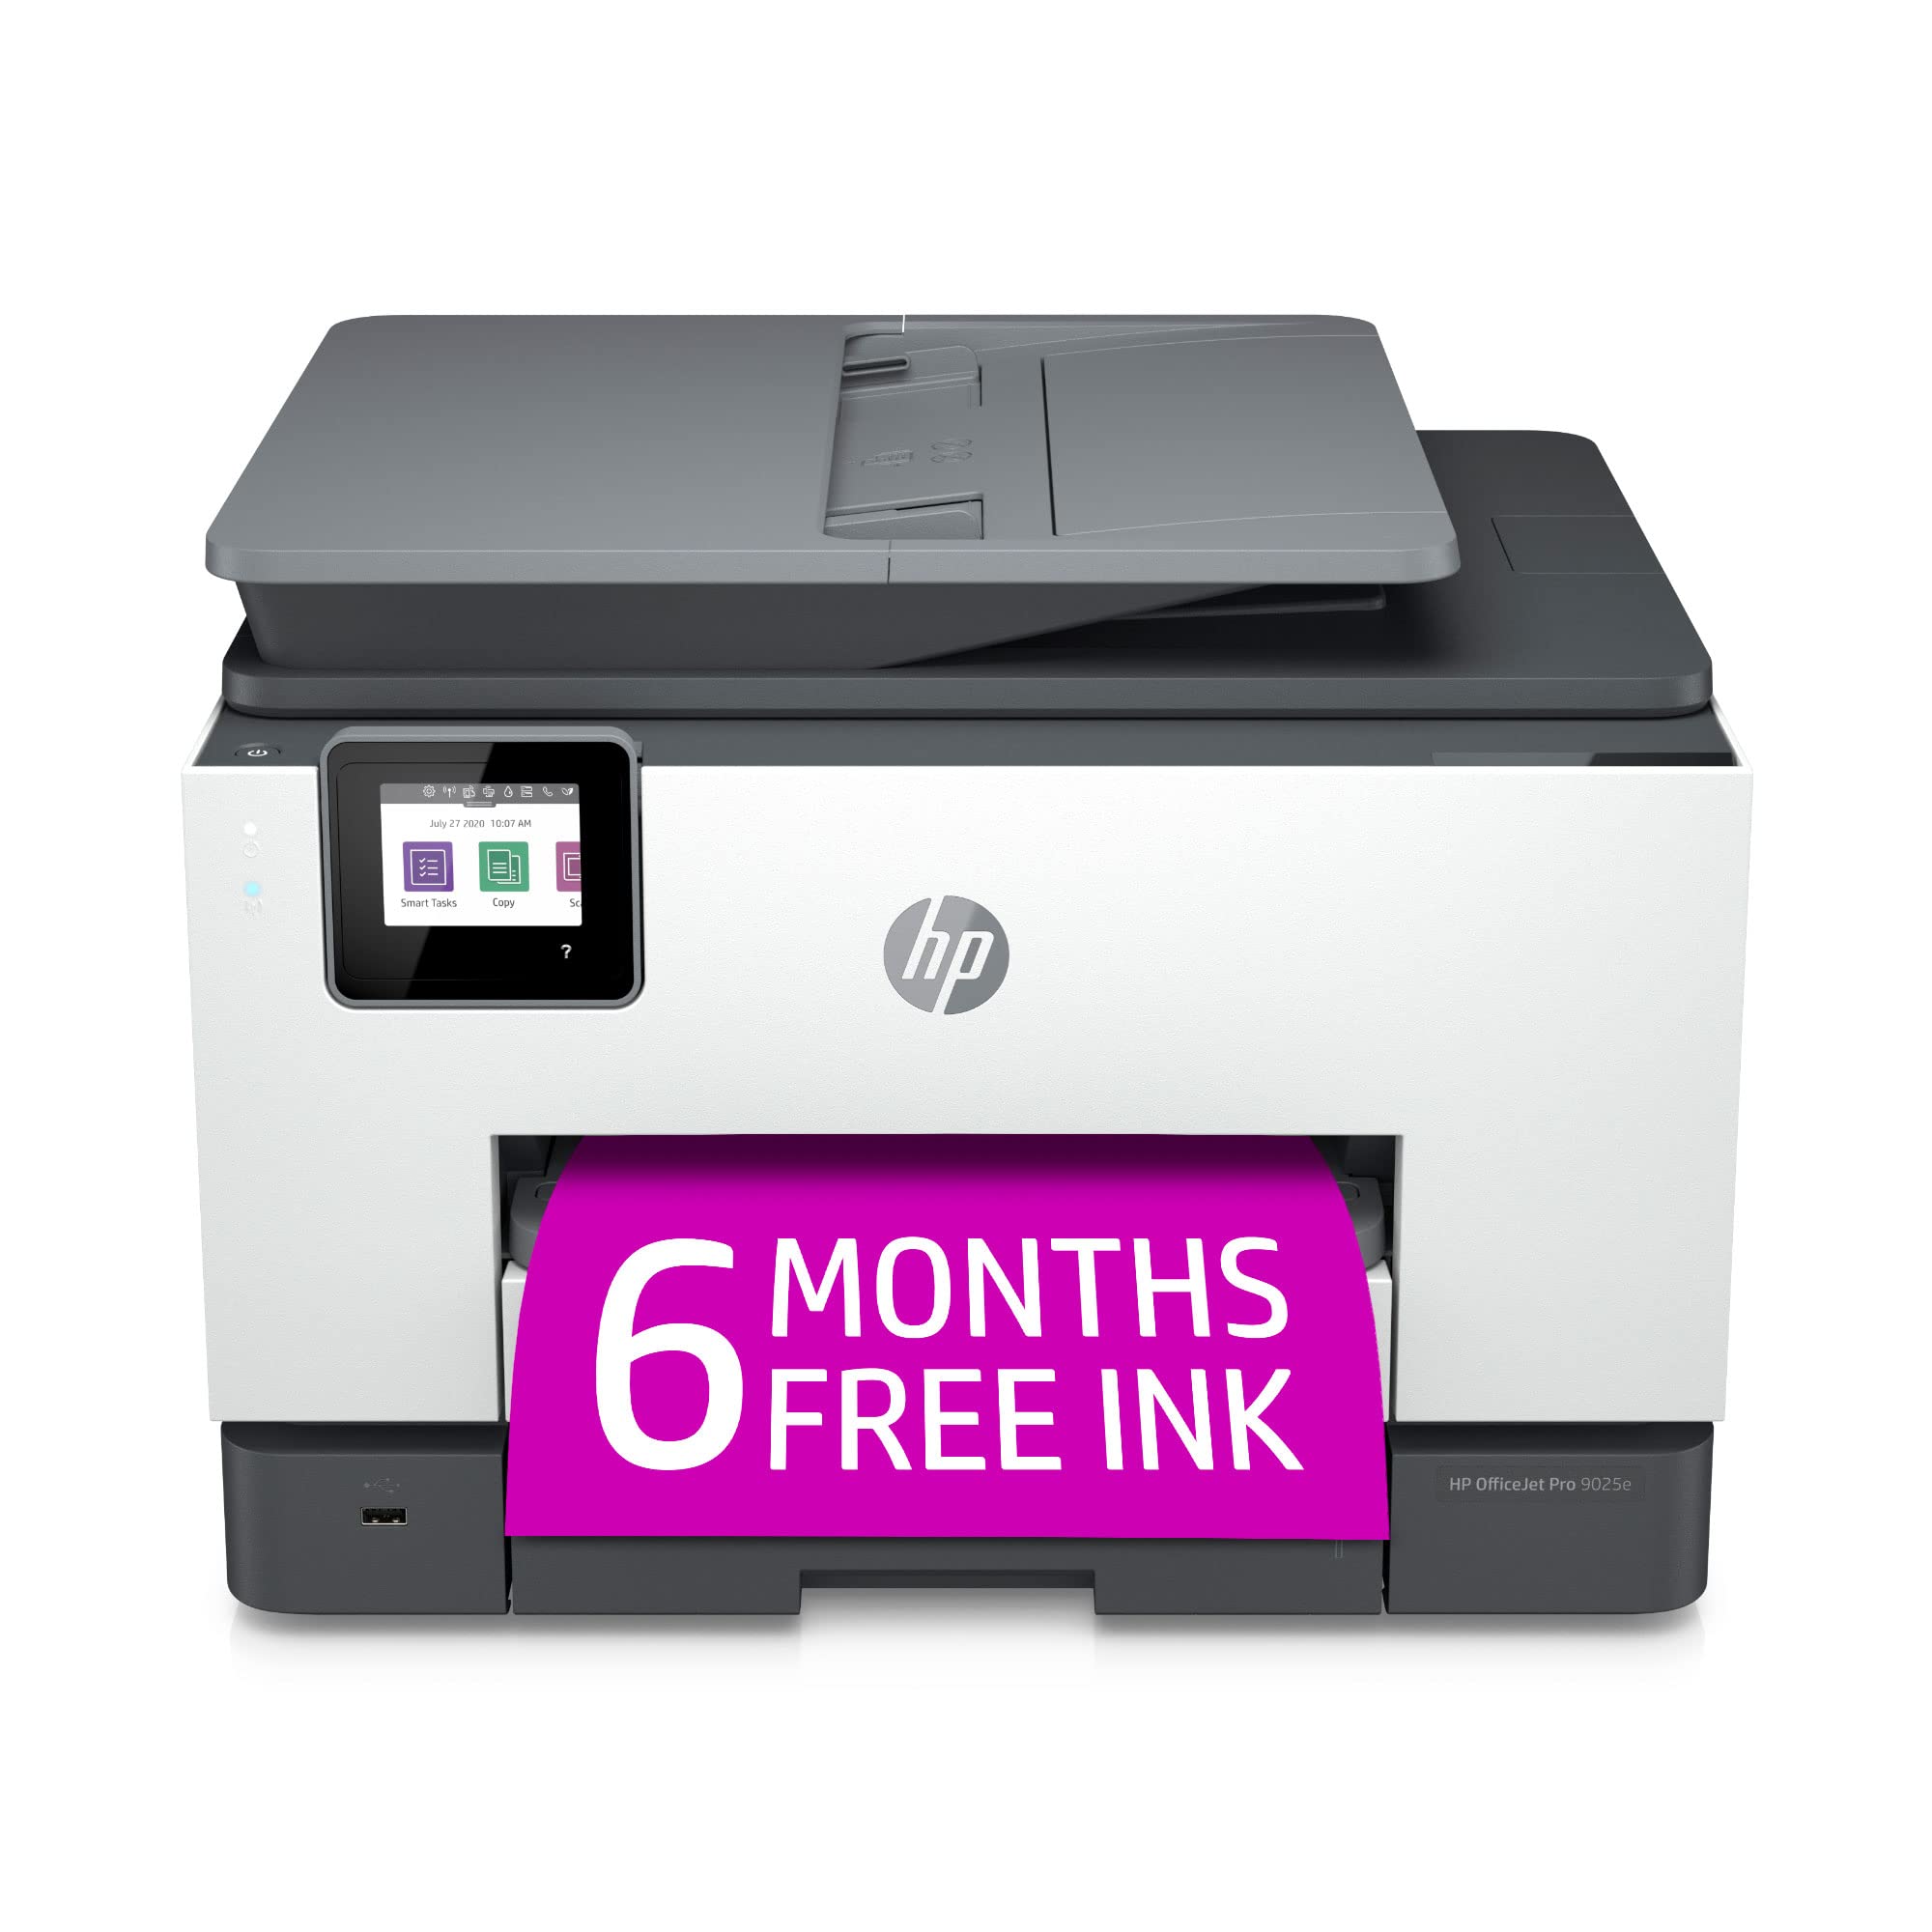 HP Impressora multifuncional colorida OfficeJet Pro 9025e sem fio com bônus de 6 meses de tinta instantânea com +